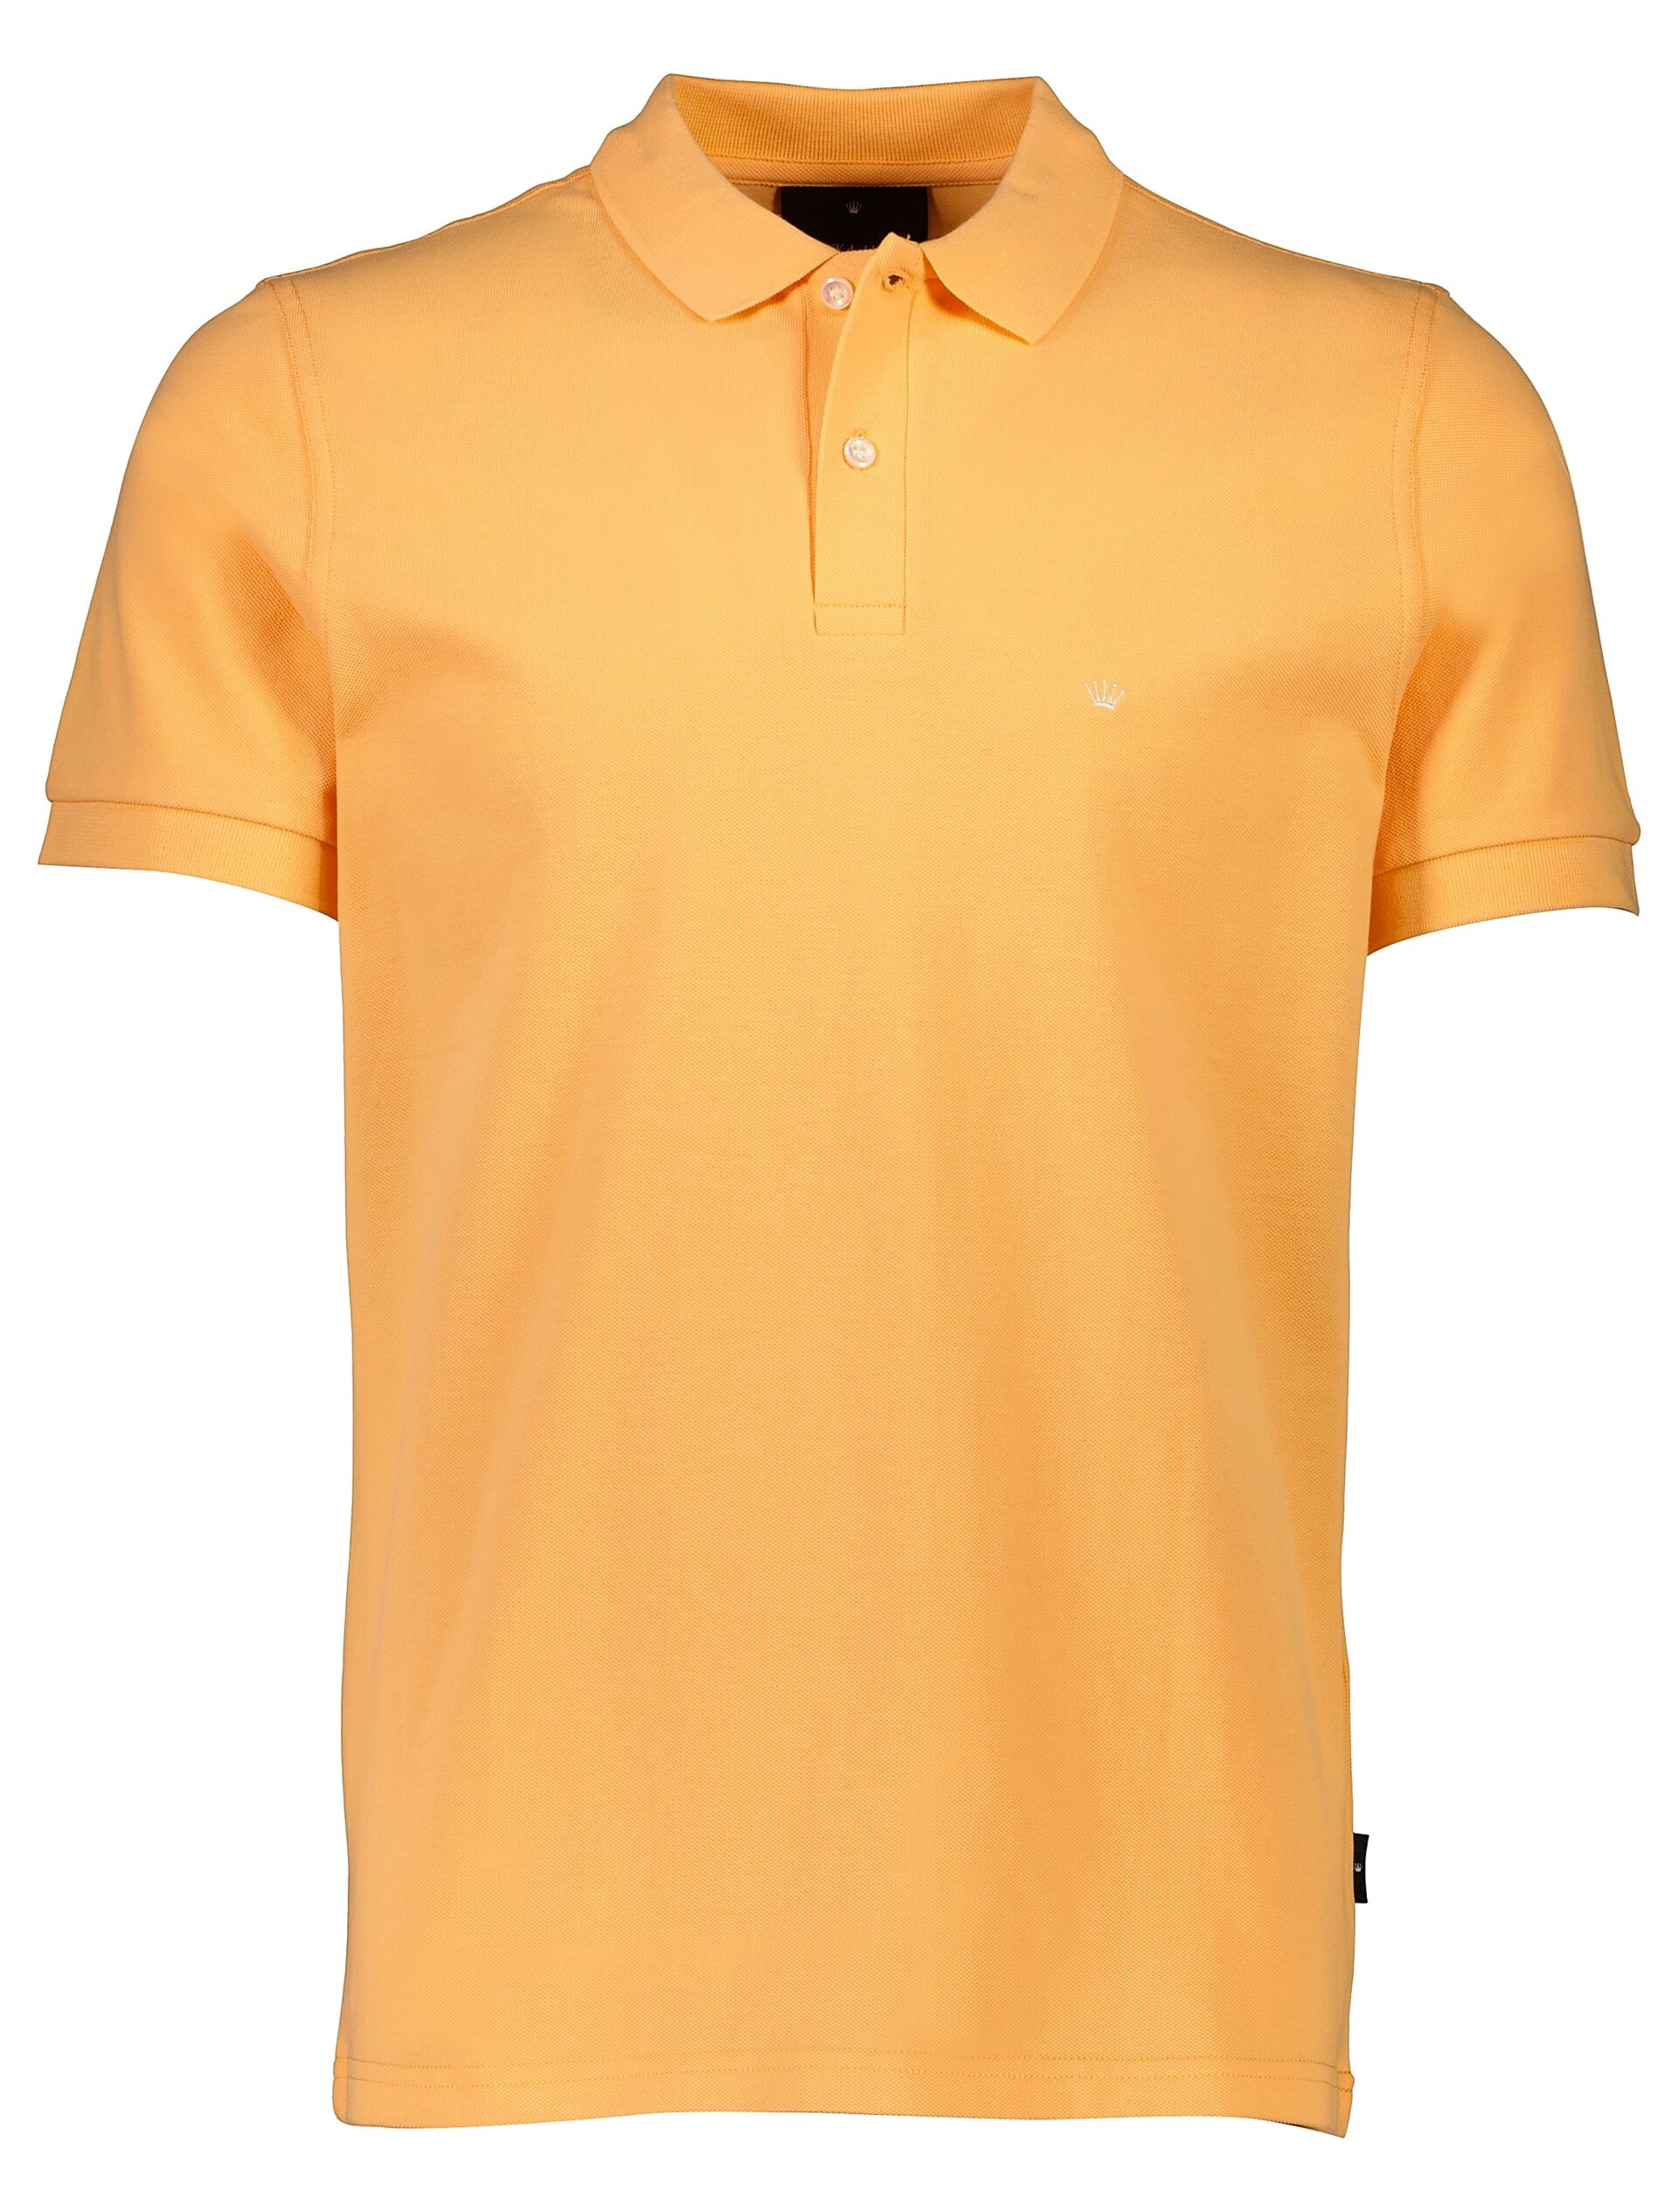 Junk de Luxe Polo shirt orange / lt apricot